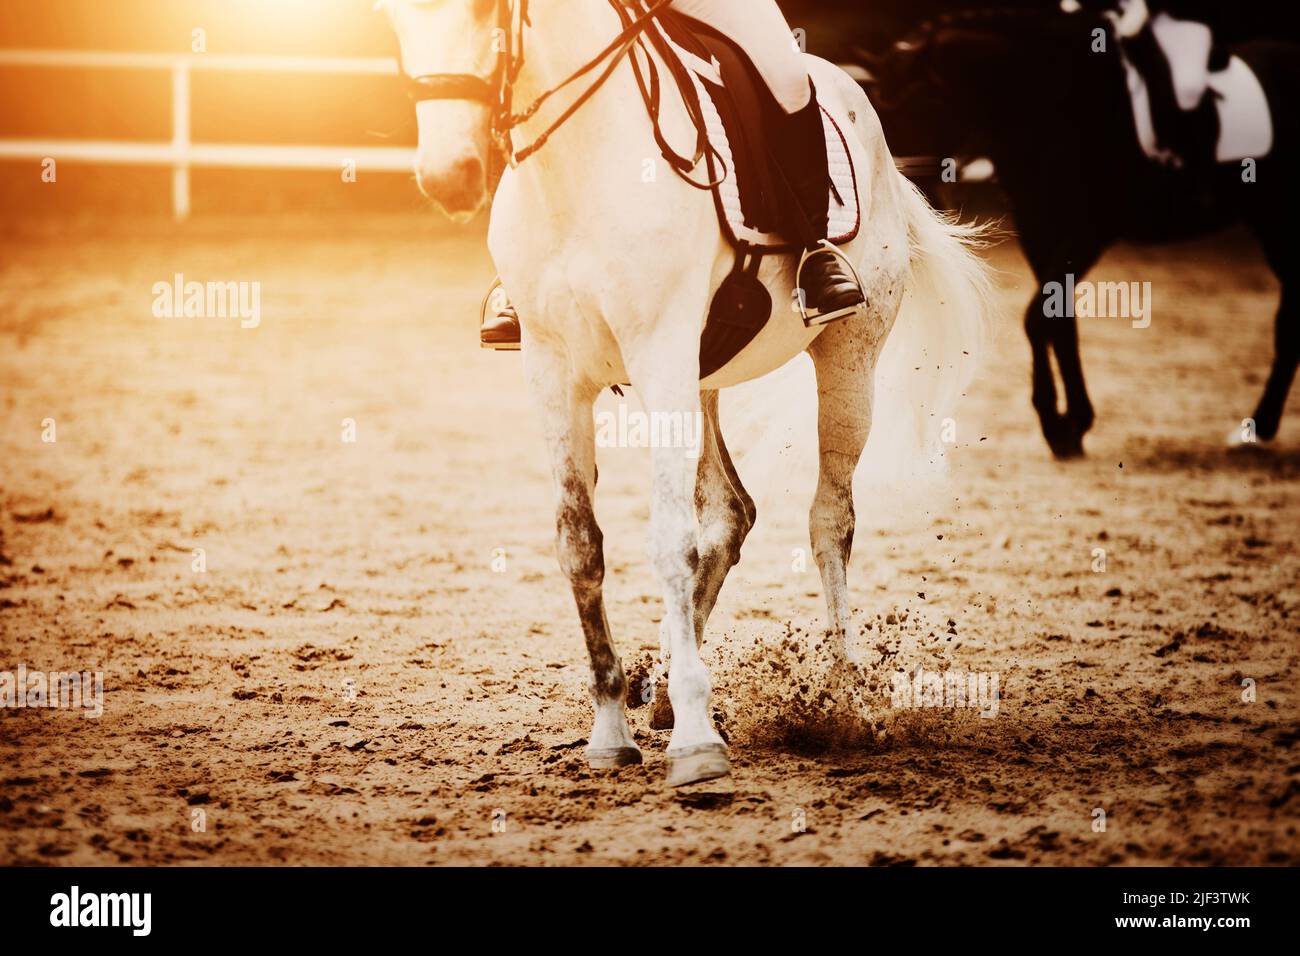 Ein weißes Pferd mit einem Reiter im Sattel galoppiert, zieht Staub mit seinen Hufen auf, beleuchtet von hellem Sonnenlicht. Reitsport. Reiten. Stockfoto